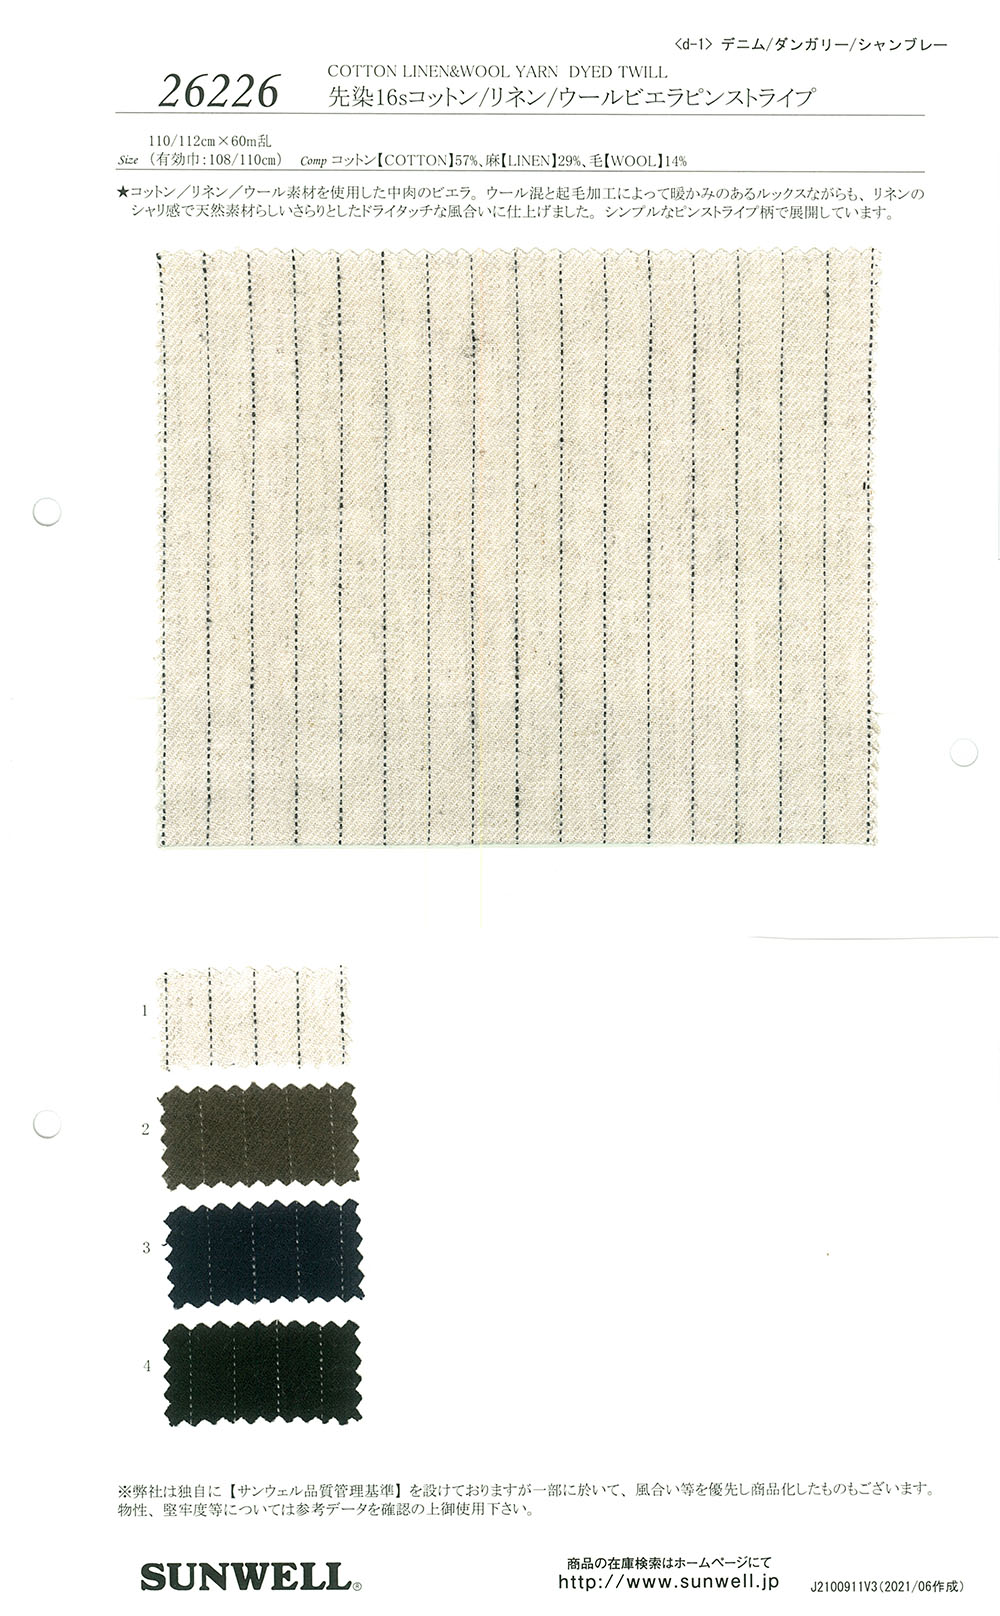 26226 色织16线棉/麻/毛维也拉法兰绒条纹[面料] SUNWELL